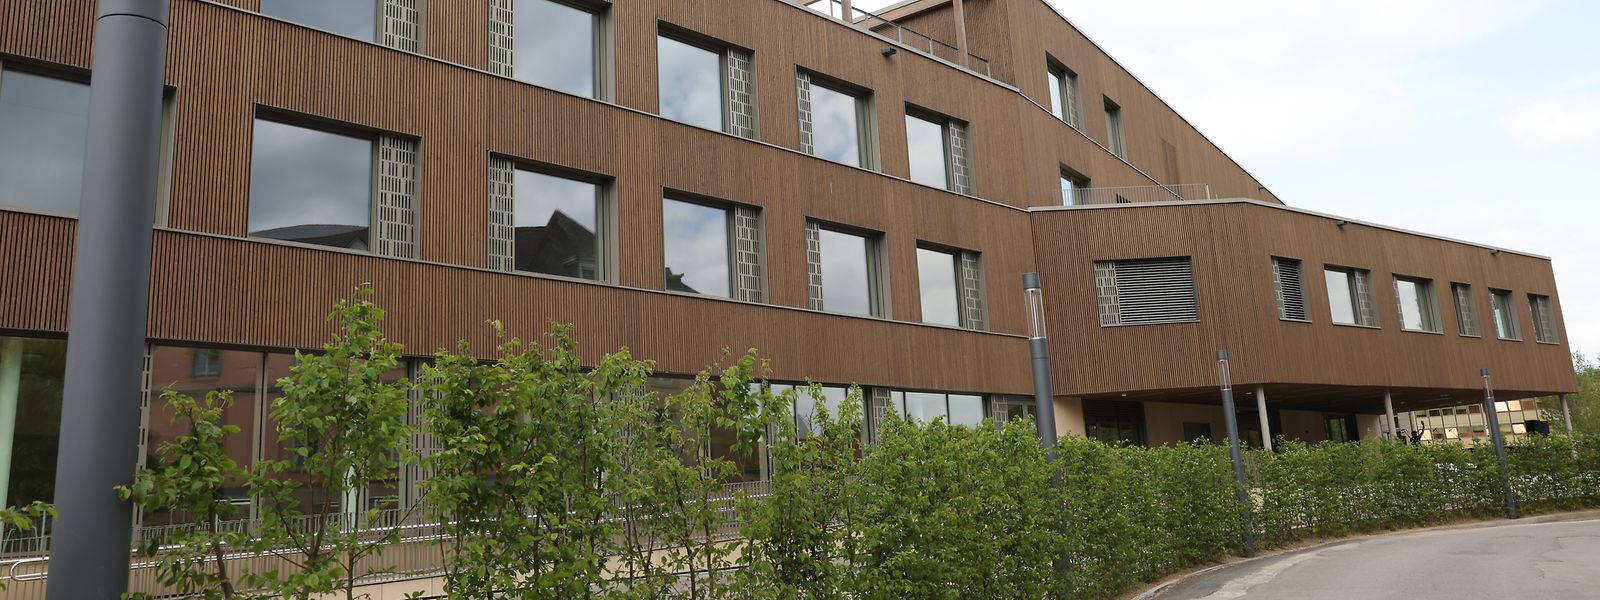 Das neue Schulgebäude am Campus Gare steht auf 180 betonierten Bohrpfählen.